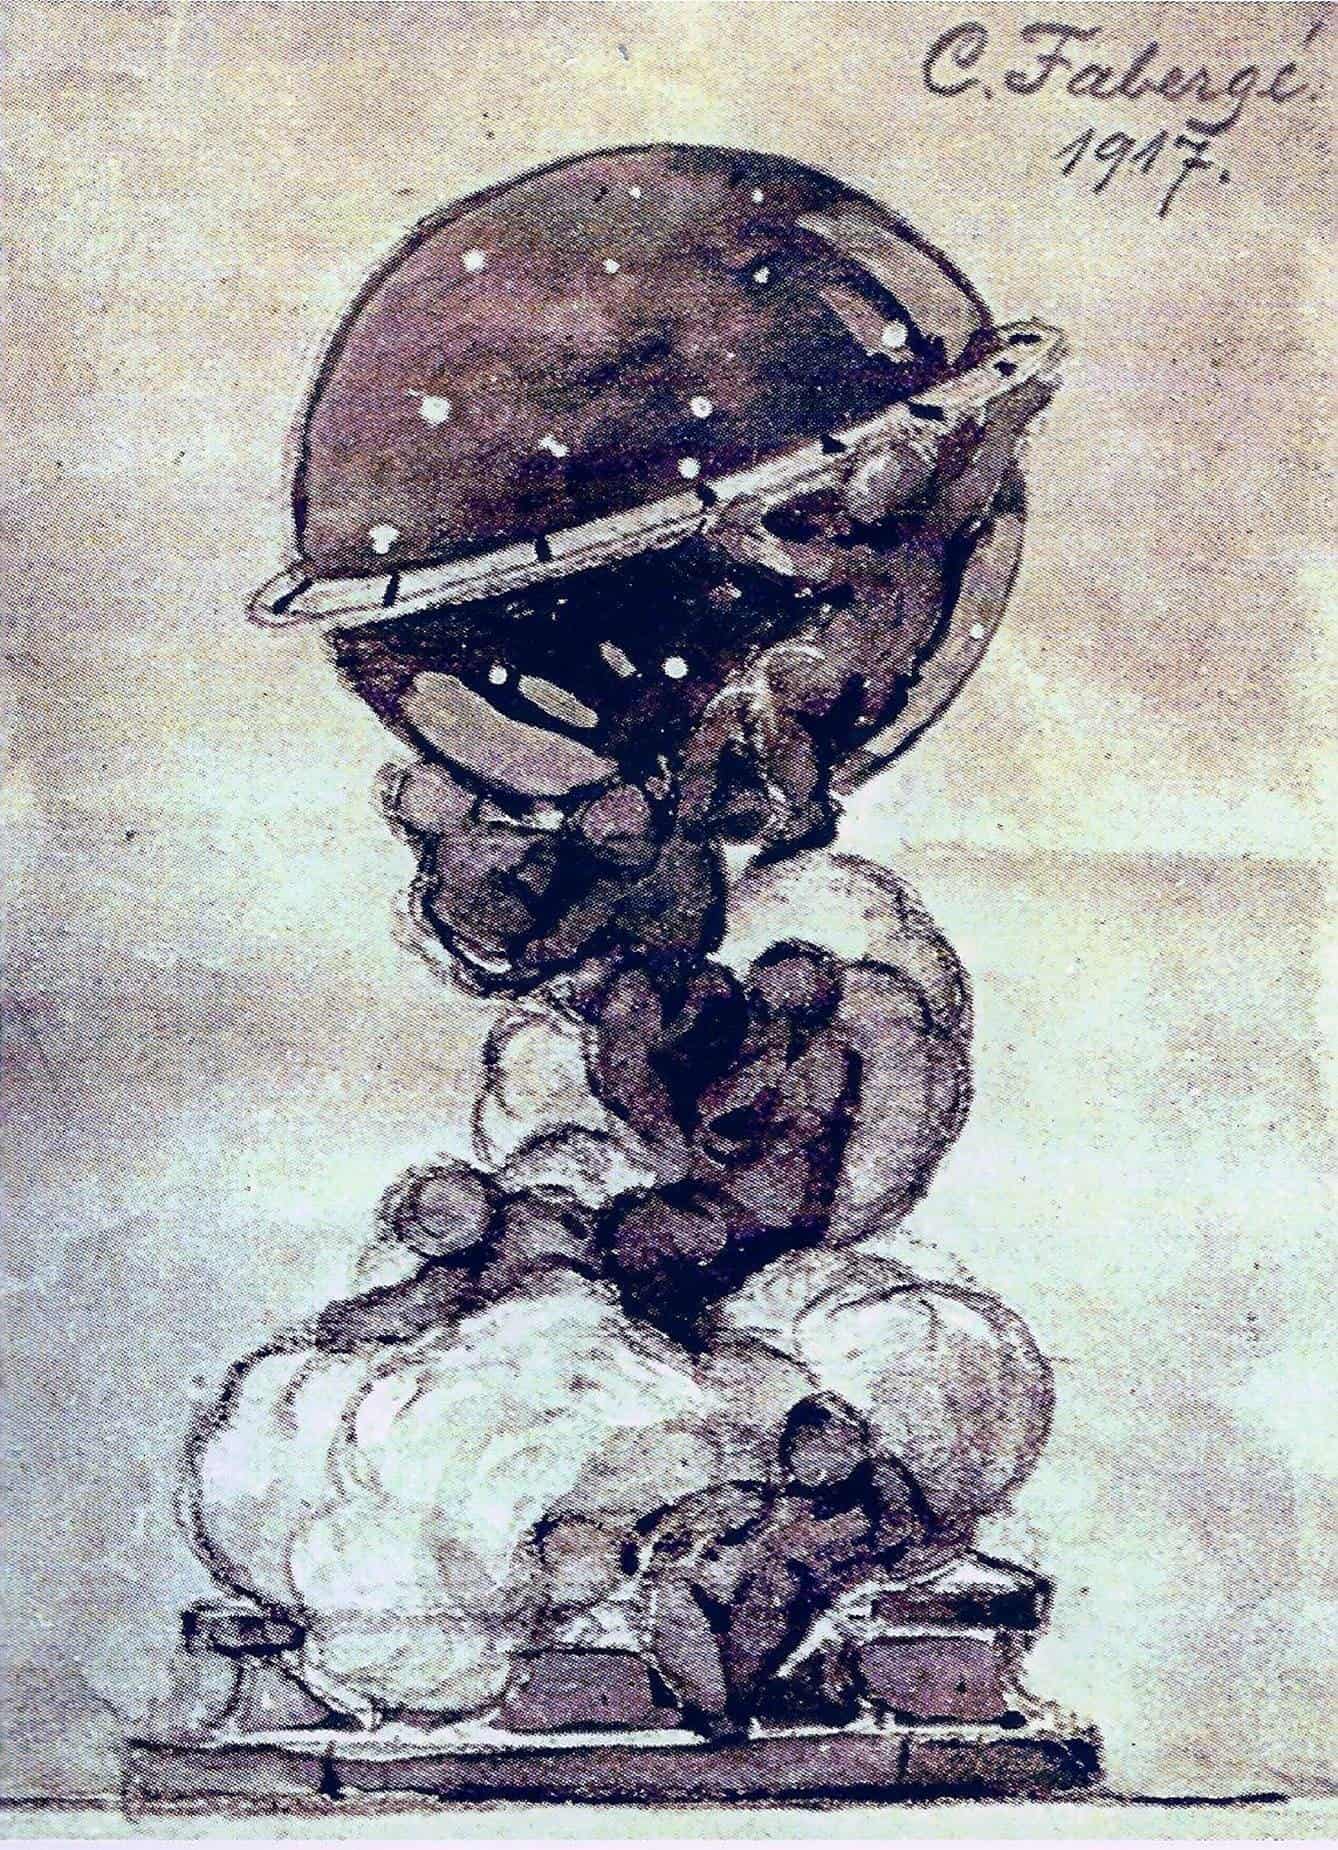 Die kreative Geschichte von Fabergé verpflichtet - hier das Fabergé Constellation Ei aus dem Jahr 1917 - das Bild ist von Igor Carl Fabergé